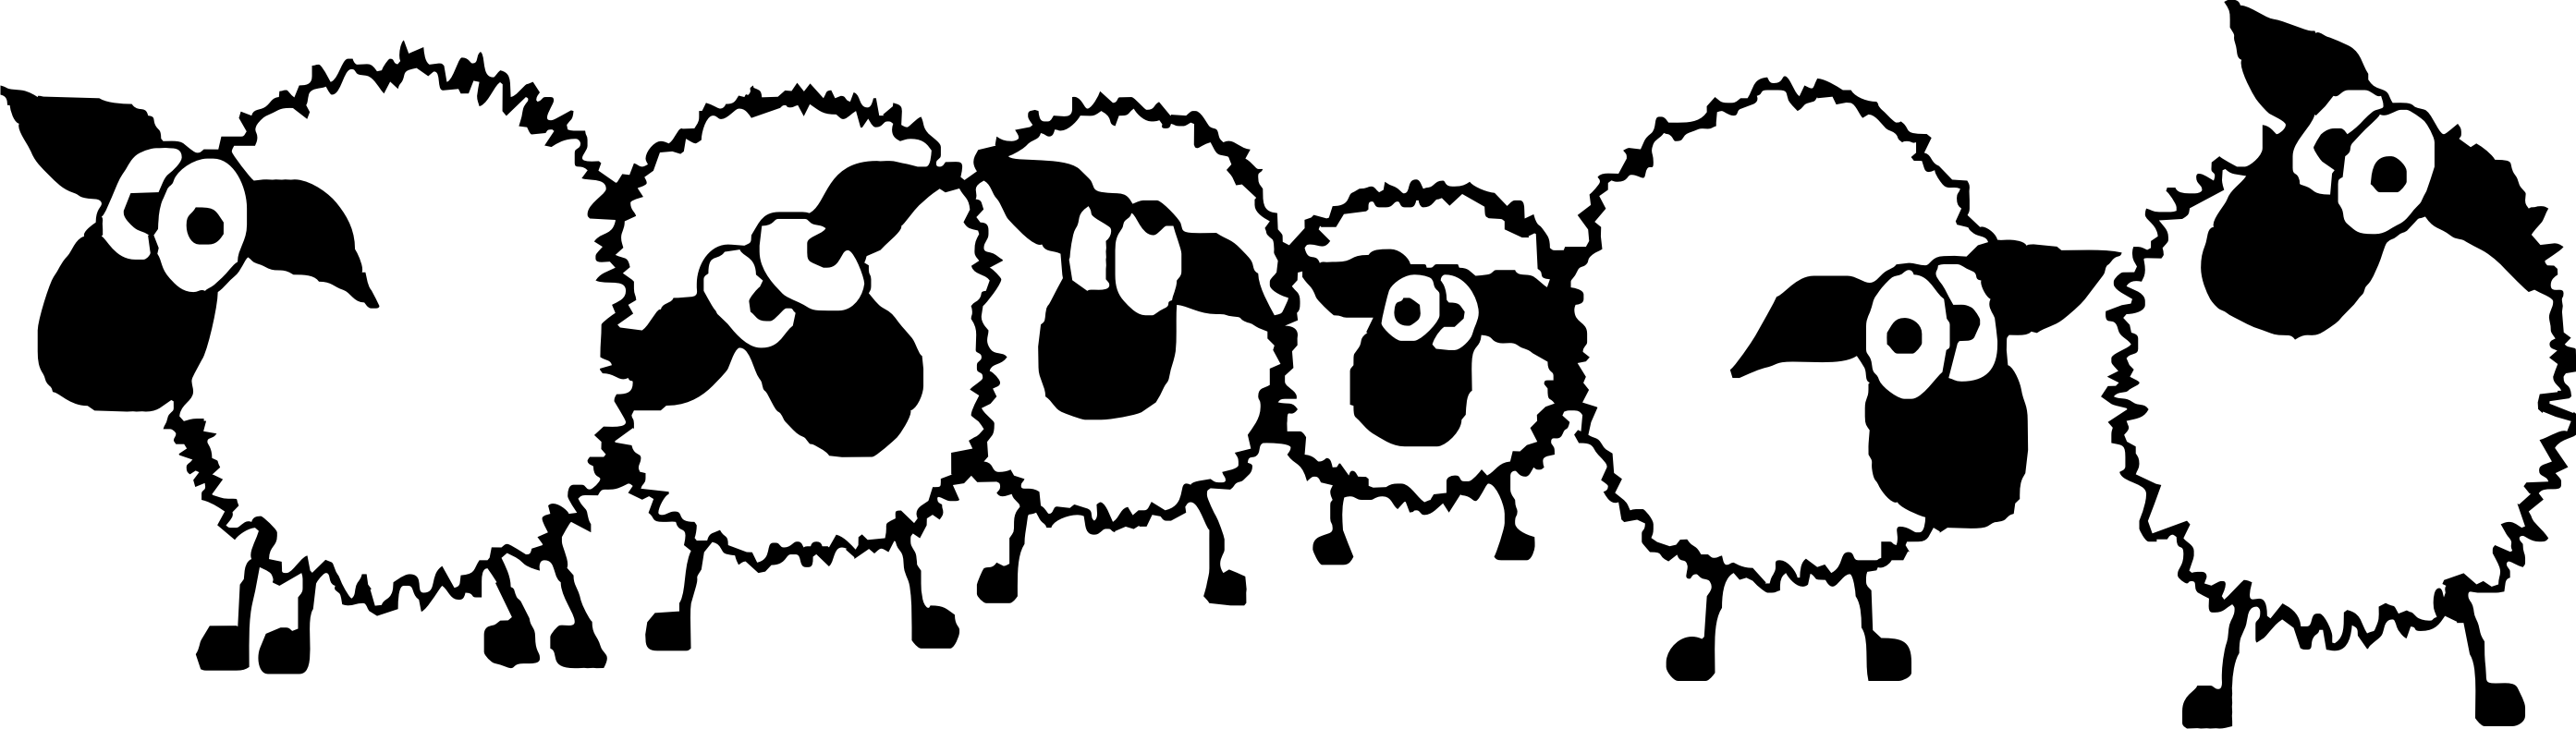 Sheep clipart 7